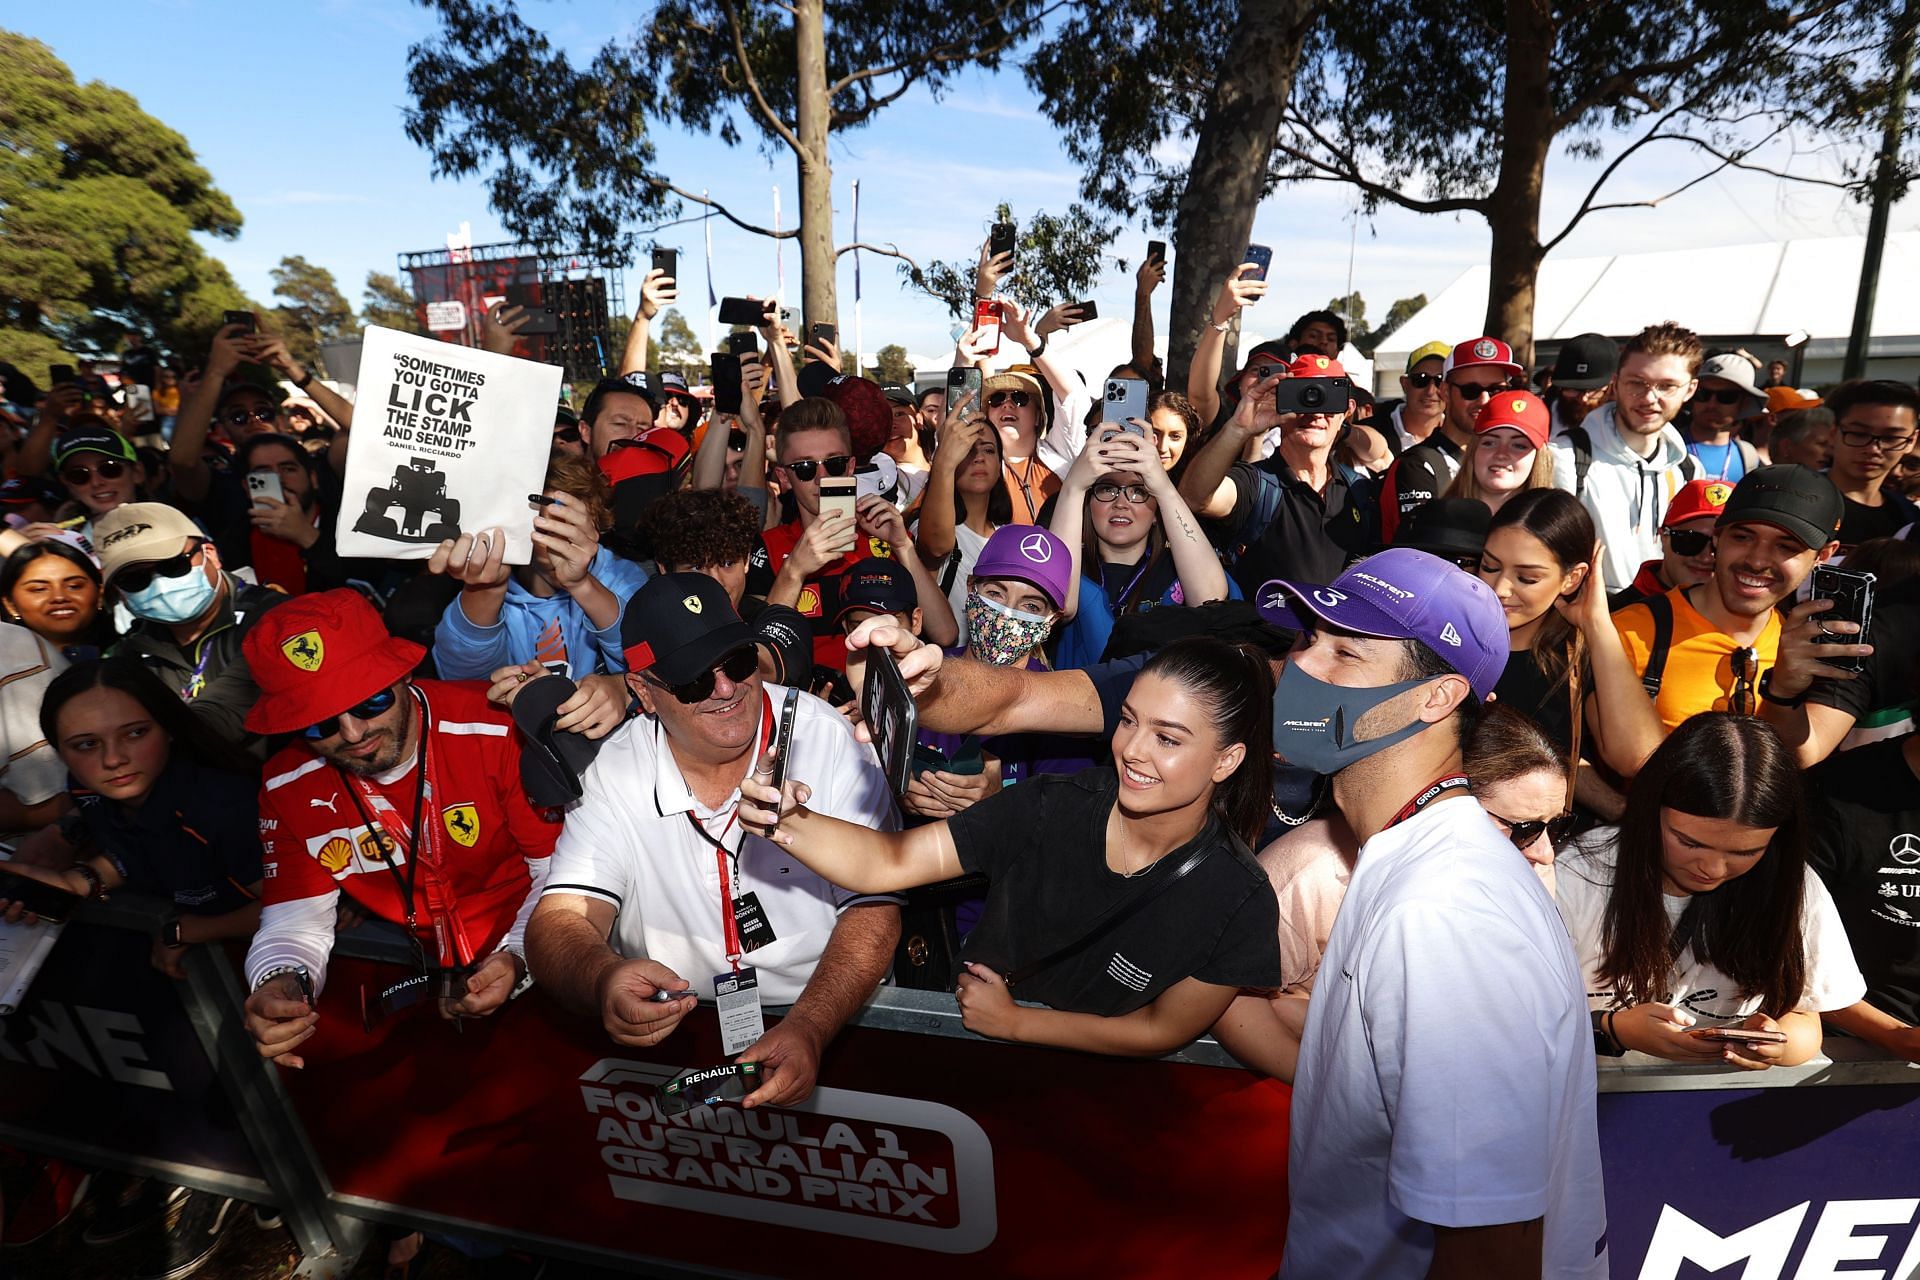 F1 Grand Prix of Australia - Practice - Daniel Ricciardo meets fans in Melbourne